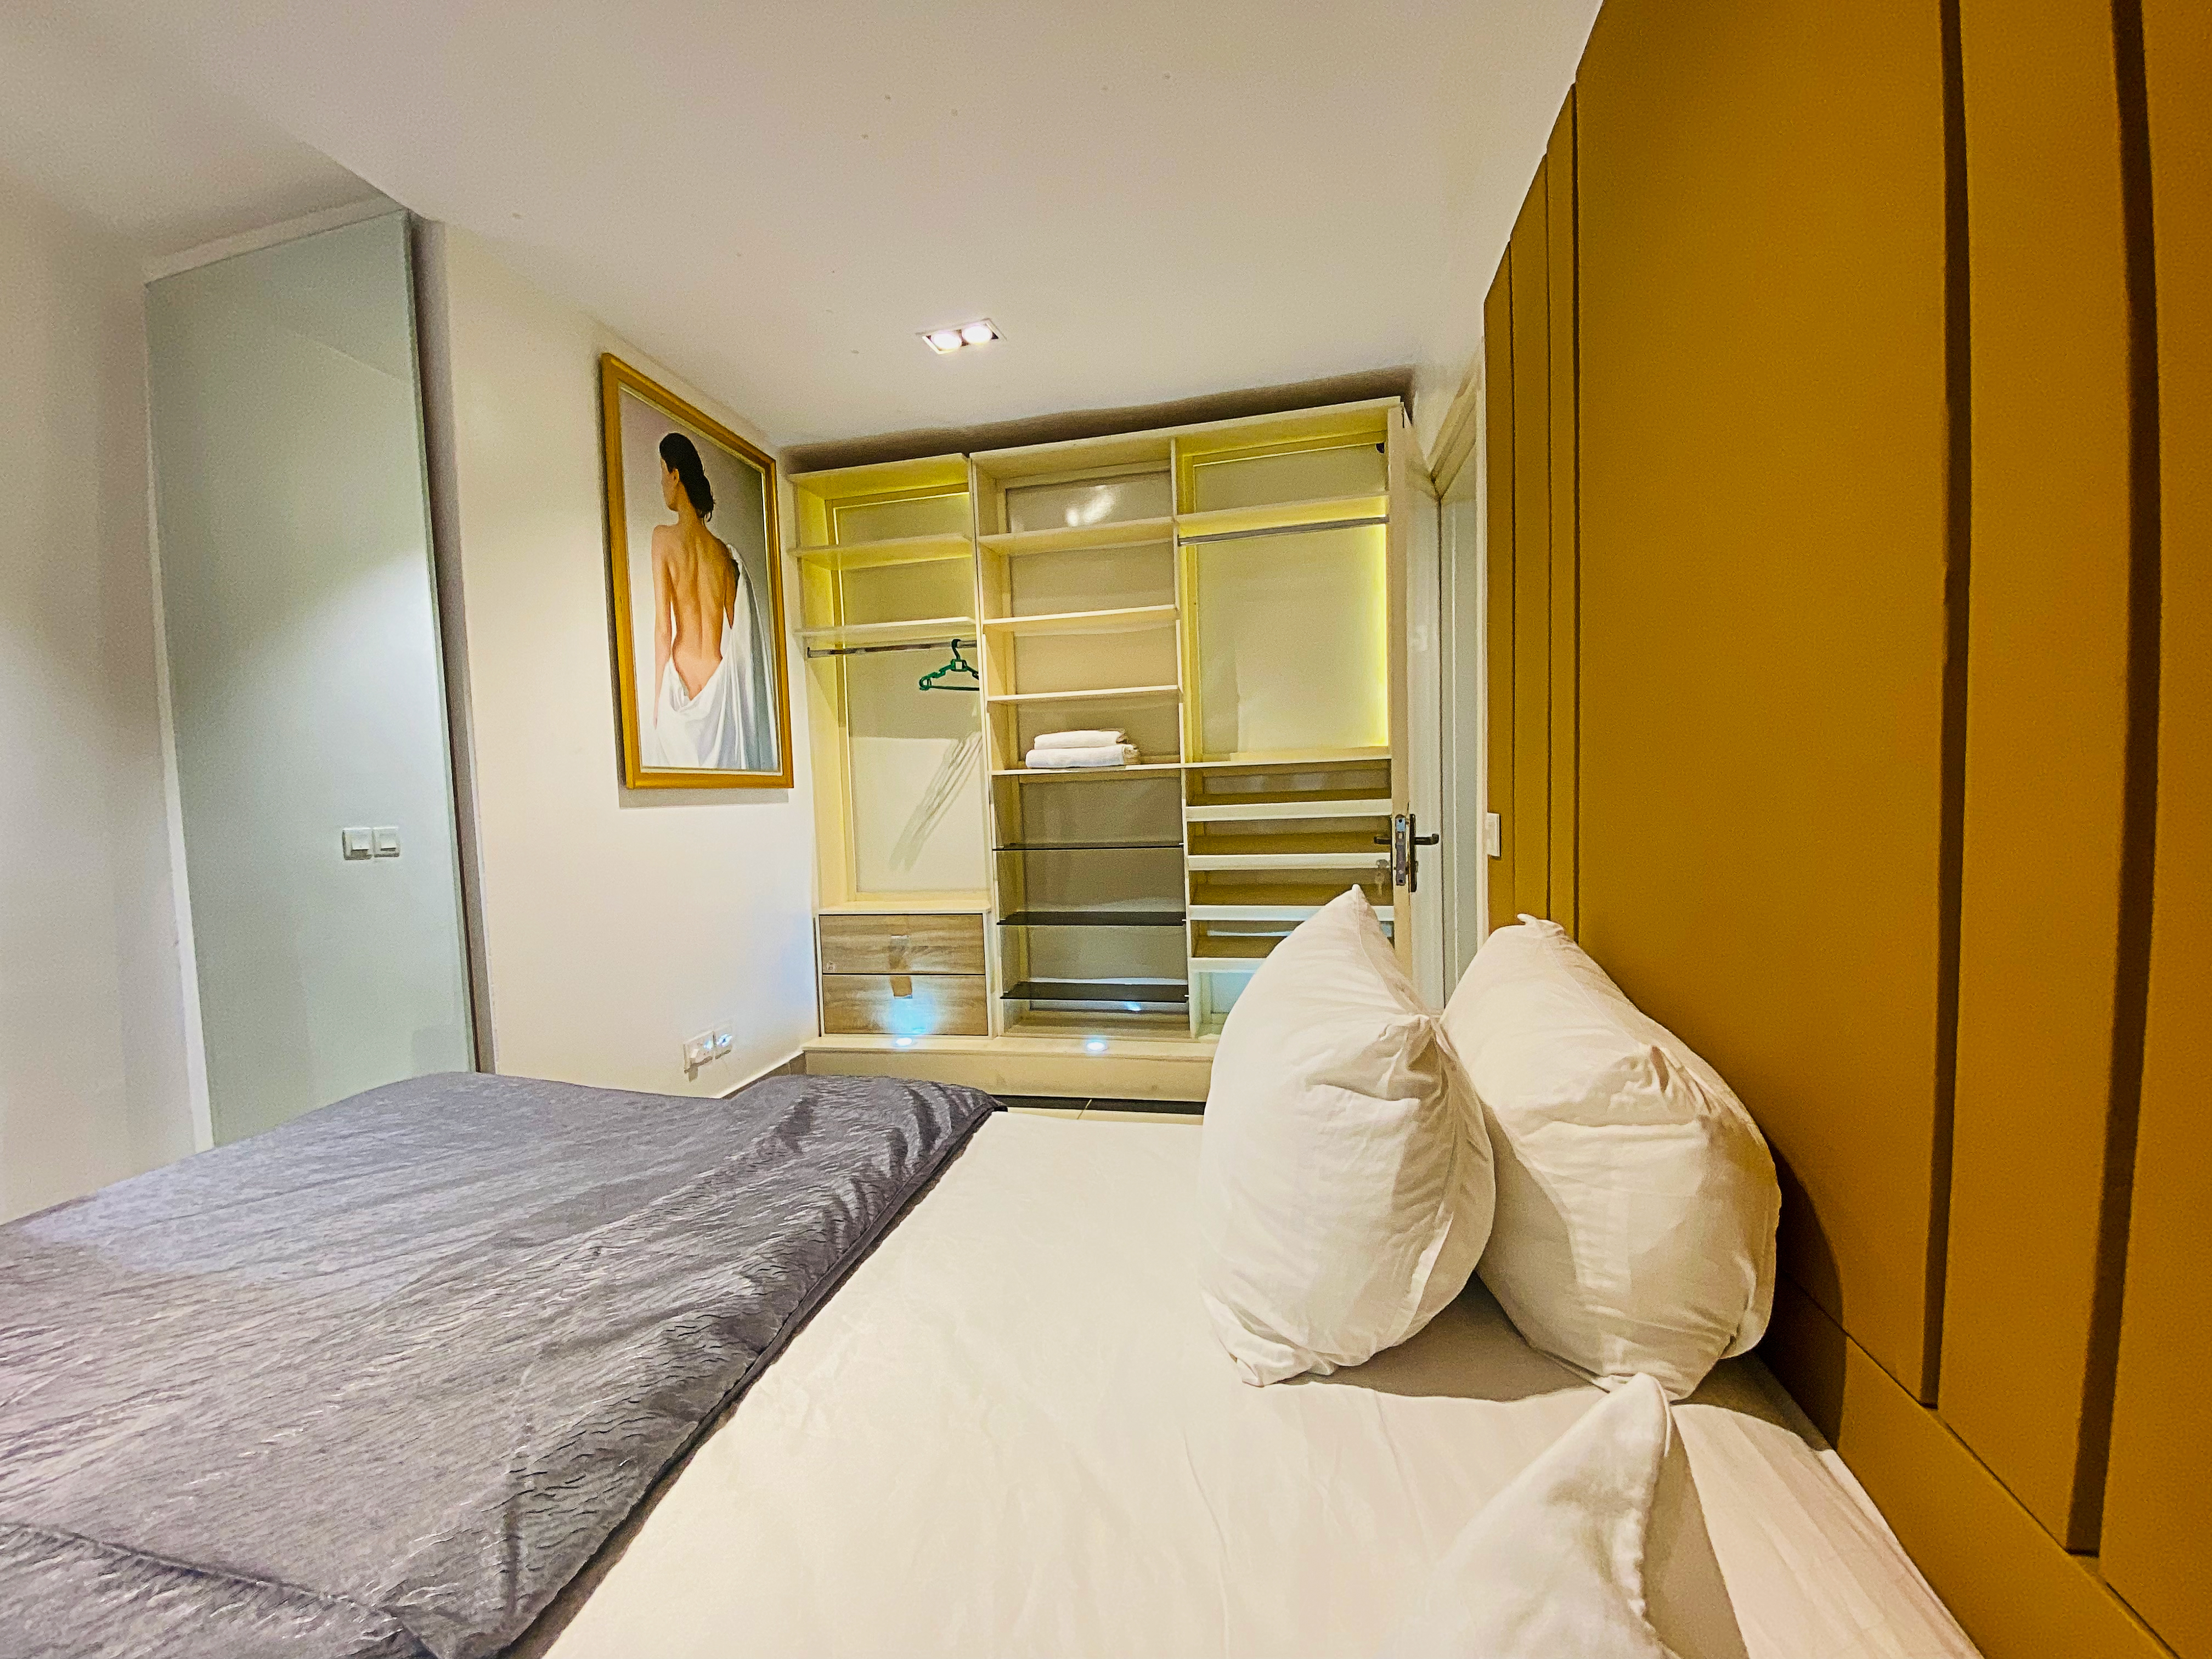 2 bedrooms Flat / Apartment for shortlet at Lekki